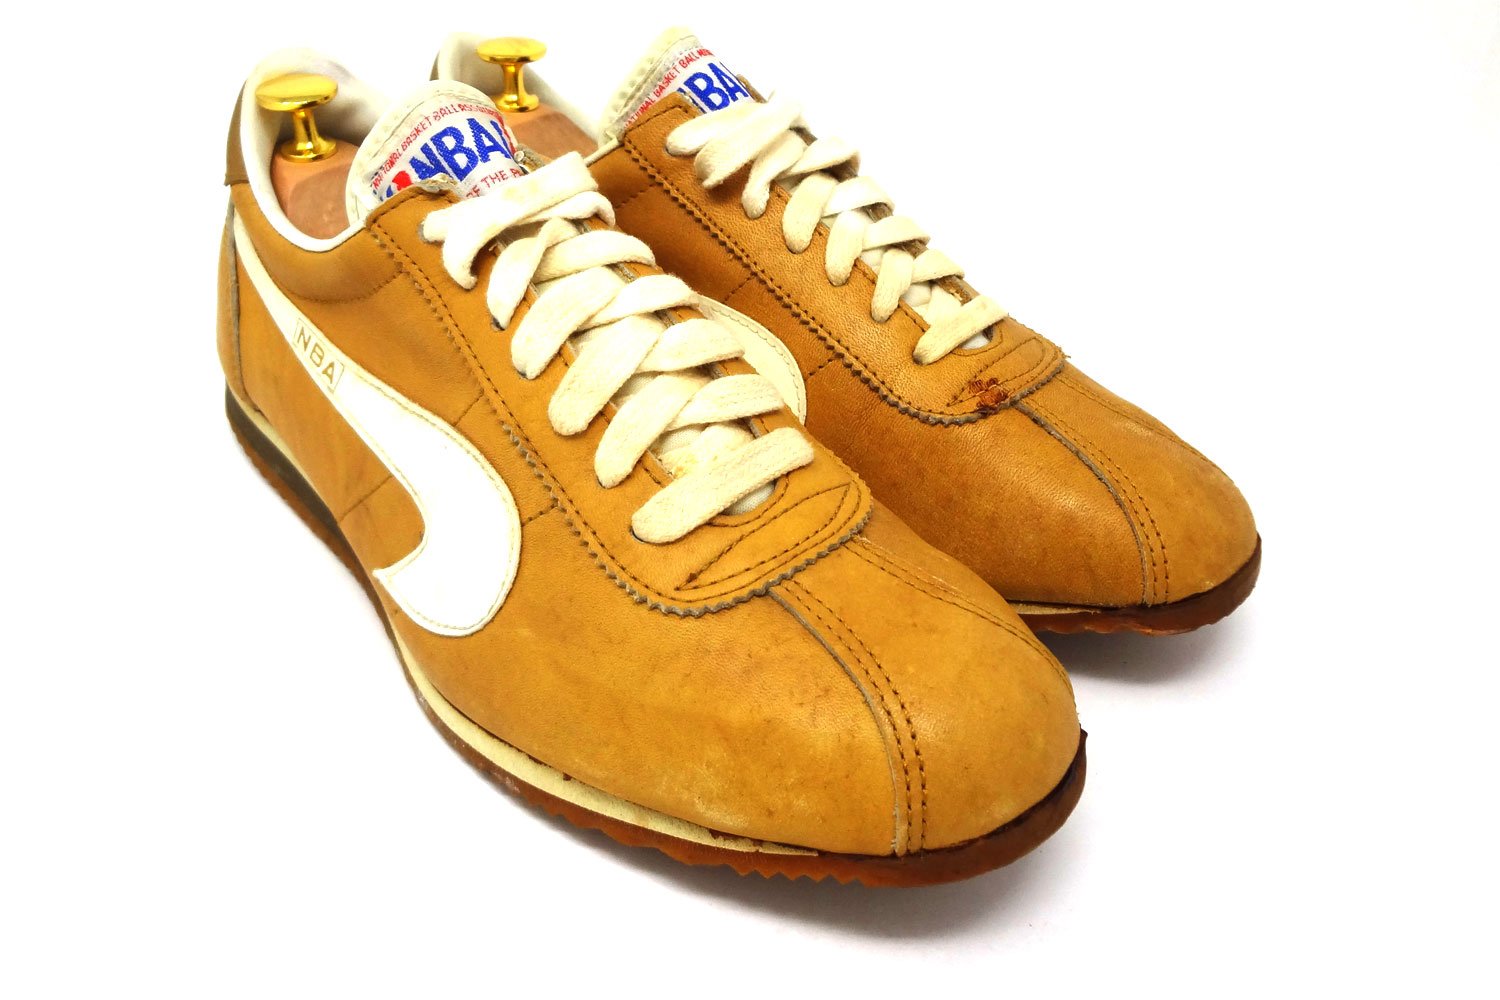 Kinney-NBA-Nike-Le-Village-vintage-sneaker-comparison-3-4-The-Deffest.jpg